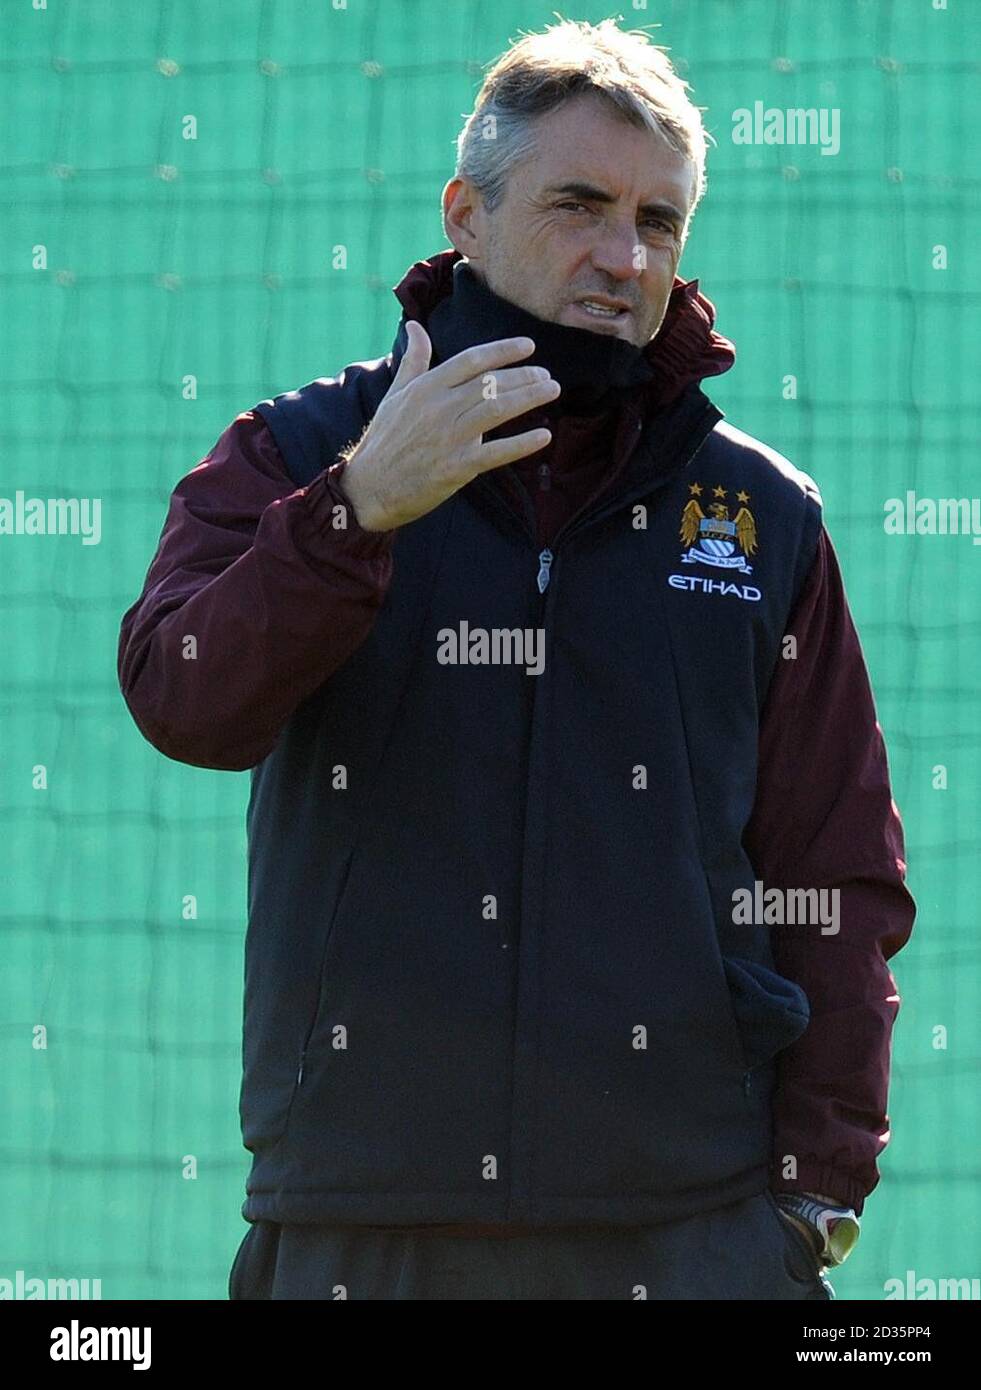 El director de Manchester City, Roberto Mancini, durante la sesión de entrenamiento en Carrington Training Ground, Manchester. Foto de stock